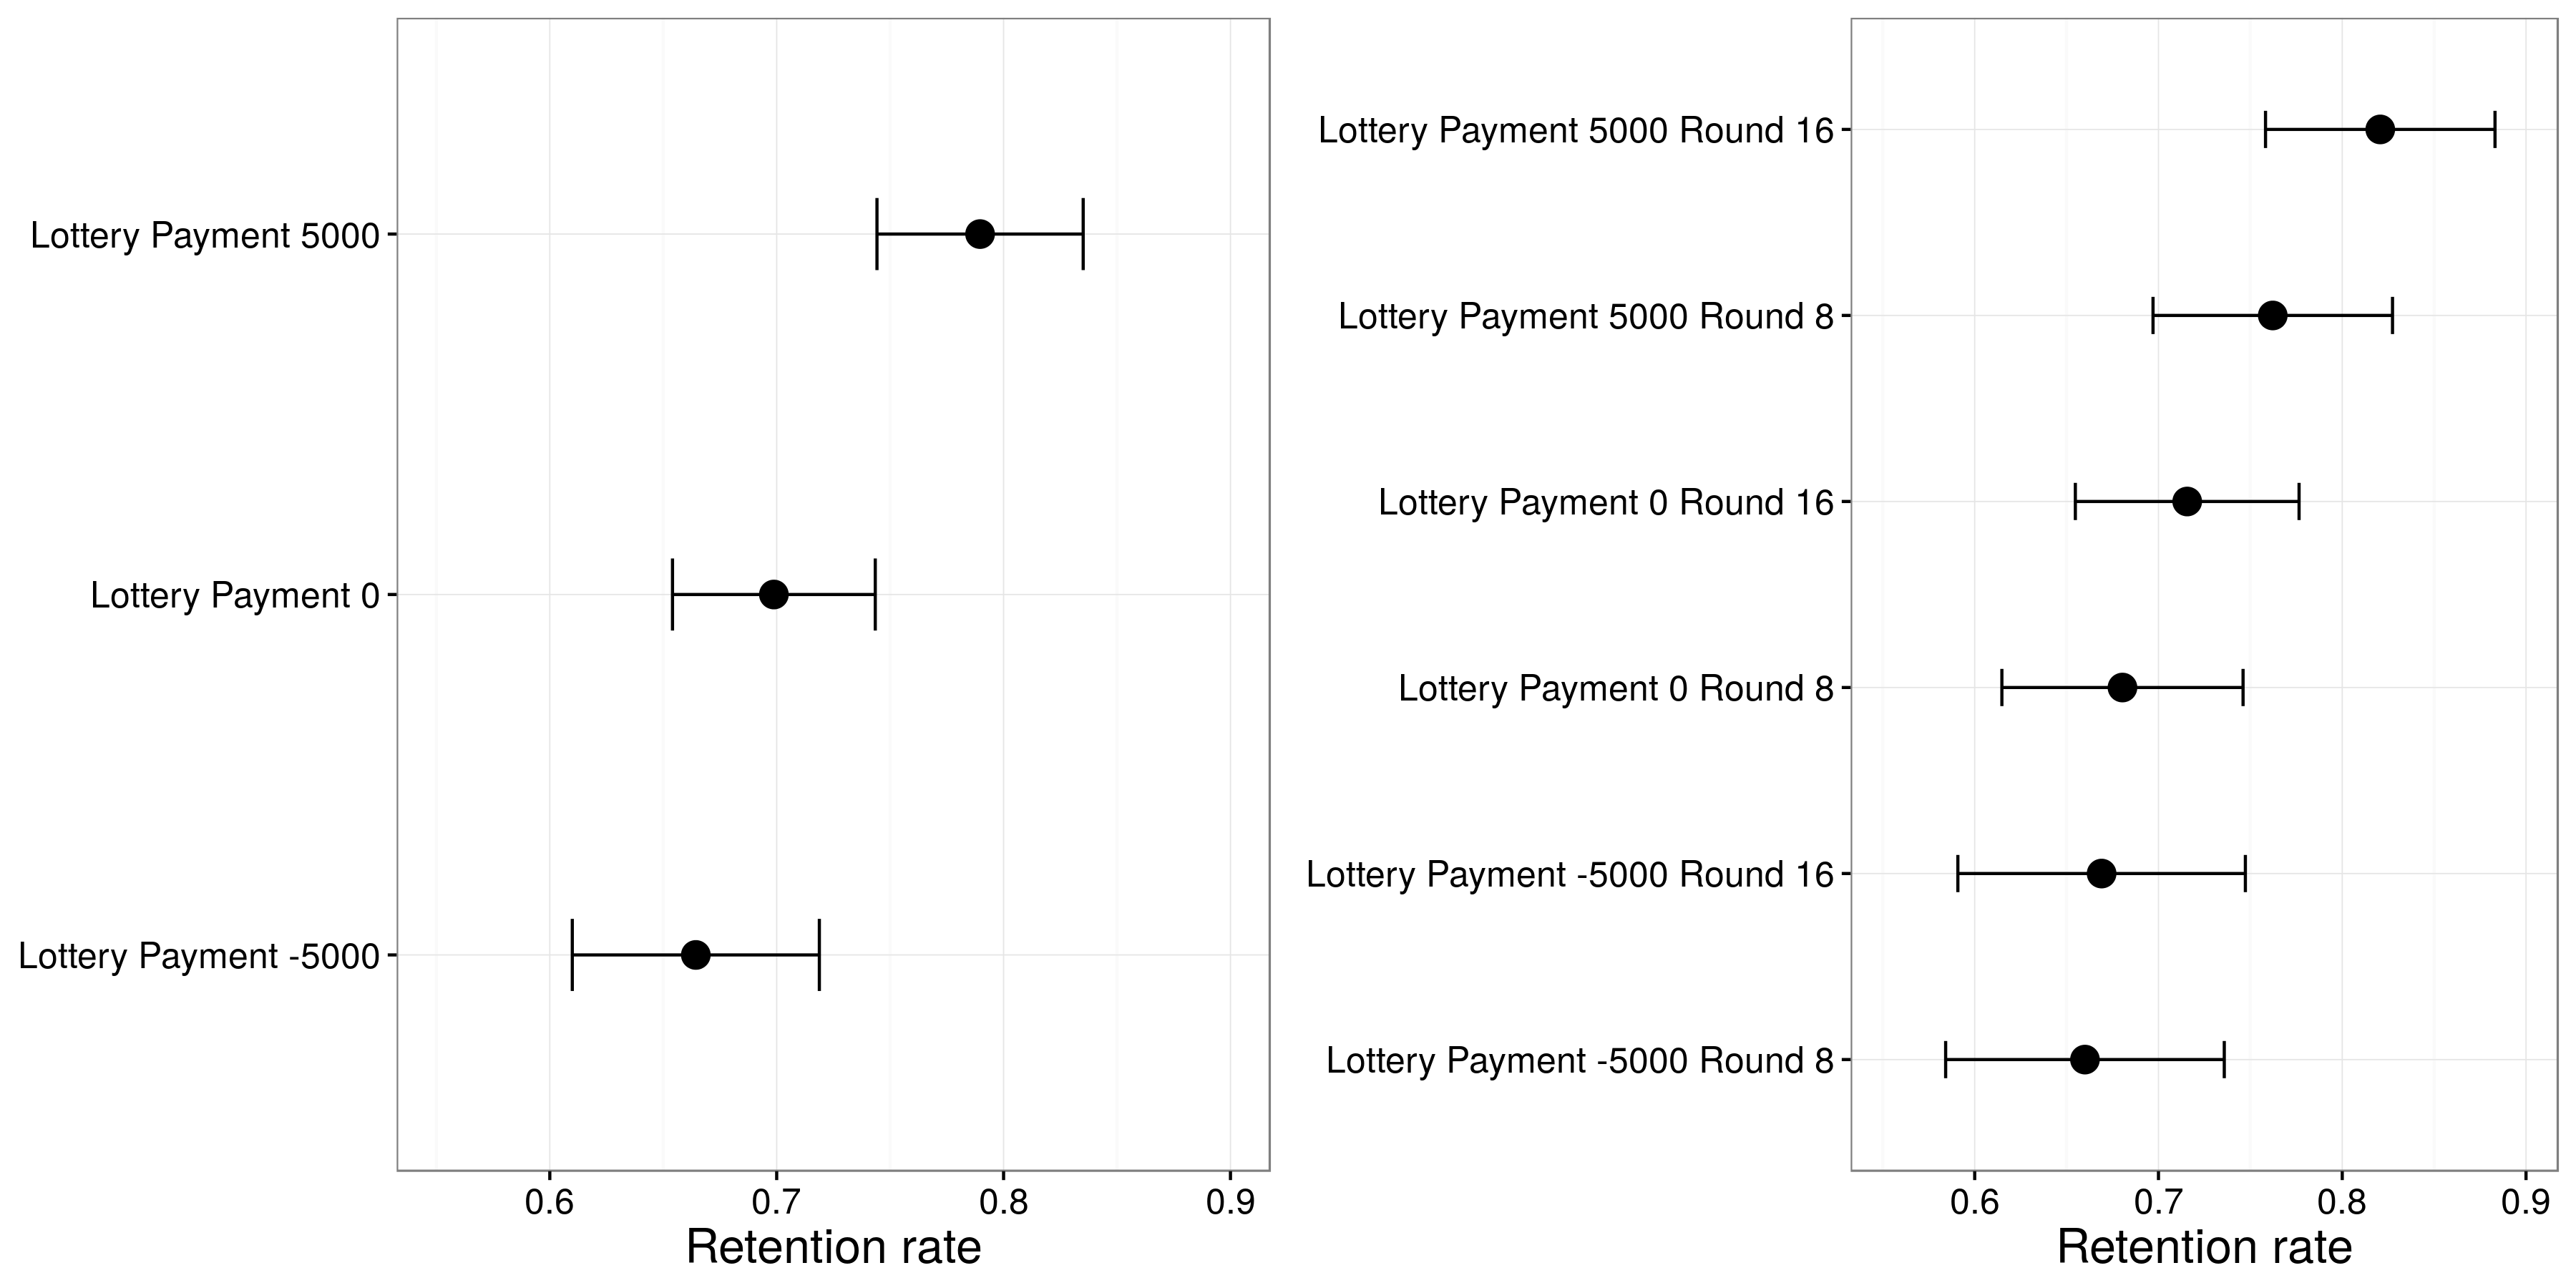 ຮູບພາບ 415: ຜົນໄດ້ຮັບຈາກ Huber, Hill, ແລະ Lenz (2012). ຜູ້ເຂົ້າຮ່ວມທີ່ໄດ້ຮັບຜົນປະໂຫຍດຈາກ lottery ມັກຈະຮັກສາການຈັດສັນຂອງພວກເຂົາແລະຜົນກະທົບນີ້ມີຄວາມເຂັ້ມແຂງໃນເວລາທີ່ lottery ເກີດຂຶ້ນໃນຮອບ 16 ຂວບກ່ອນການຕັດສິນໃຈແທນແທນທີ່ຈະເກີດຂຶ້ນໃນຮອບ 8. ທີ່ເຫມາະສົມຈາກ Huber, Hill ແລະ Lenz 2012), ຮູບ 5.